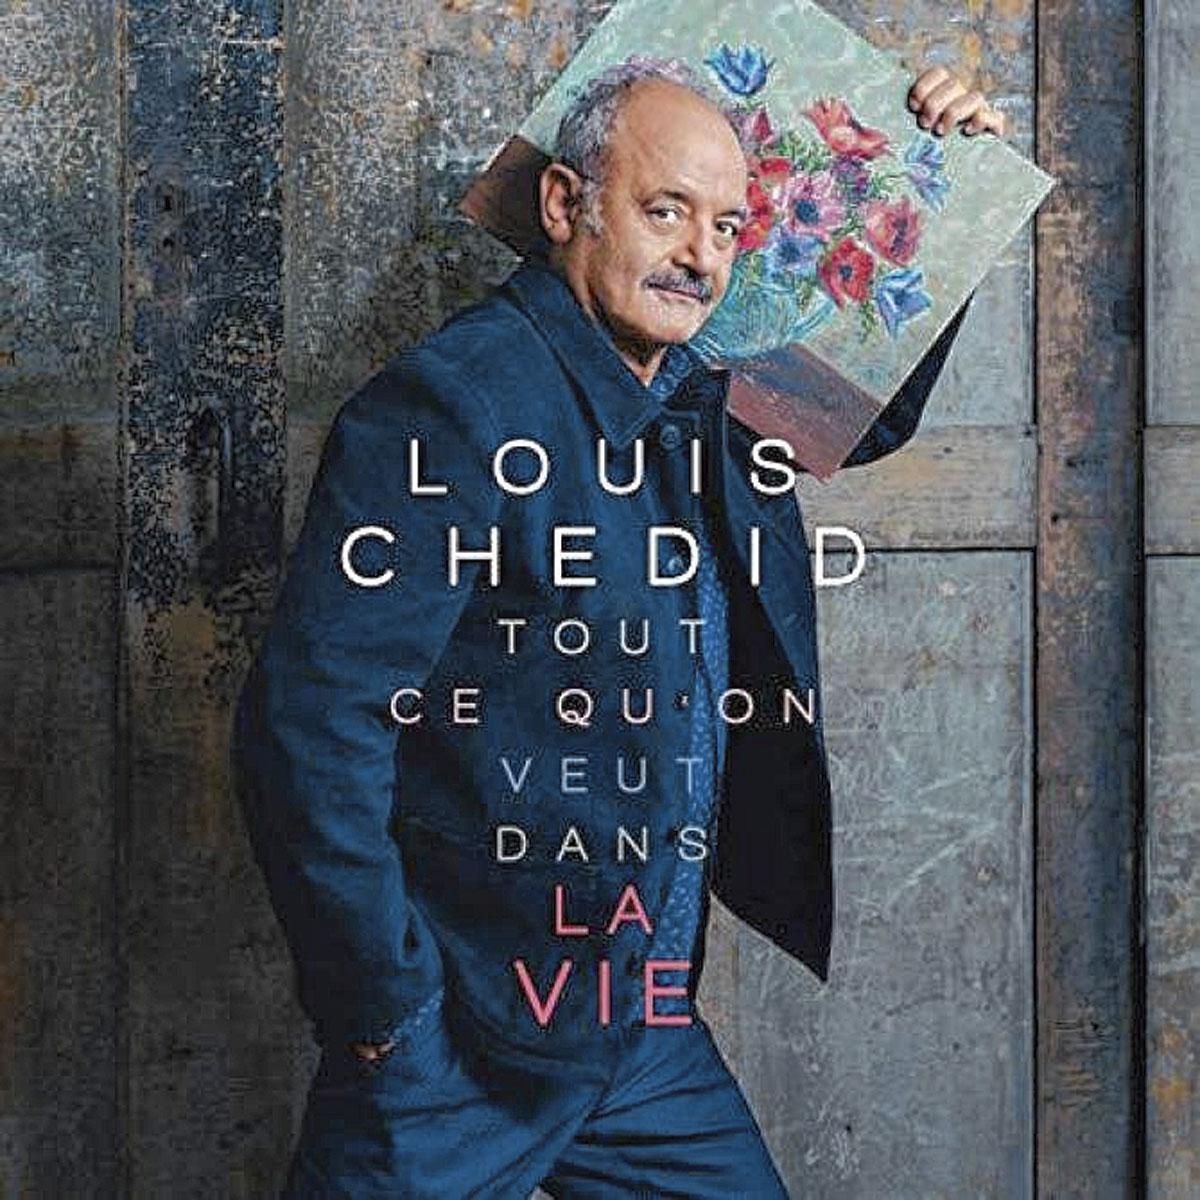 Louis Chedid, Tout ce qu'on veut dans la vie, distr. Pias. En concert le 6 mai, au Central, à La Louvière.